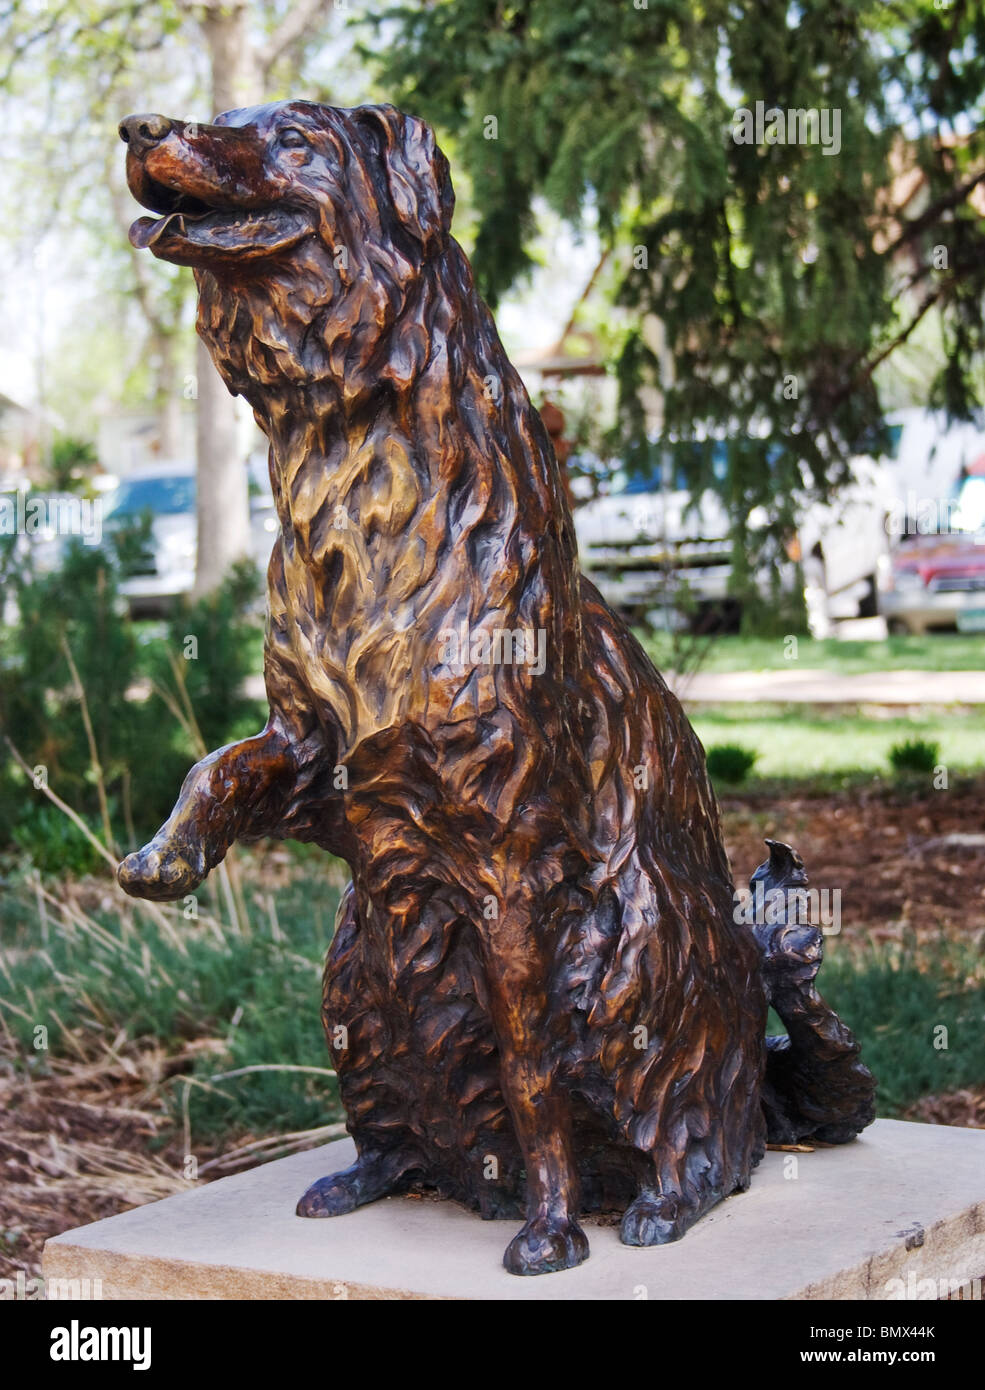 Annie la ferrovia cane statua in Fort Collins Colorado Foto Stock